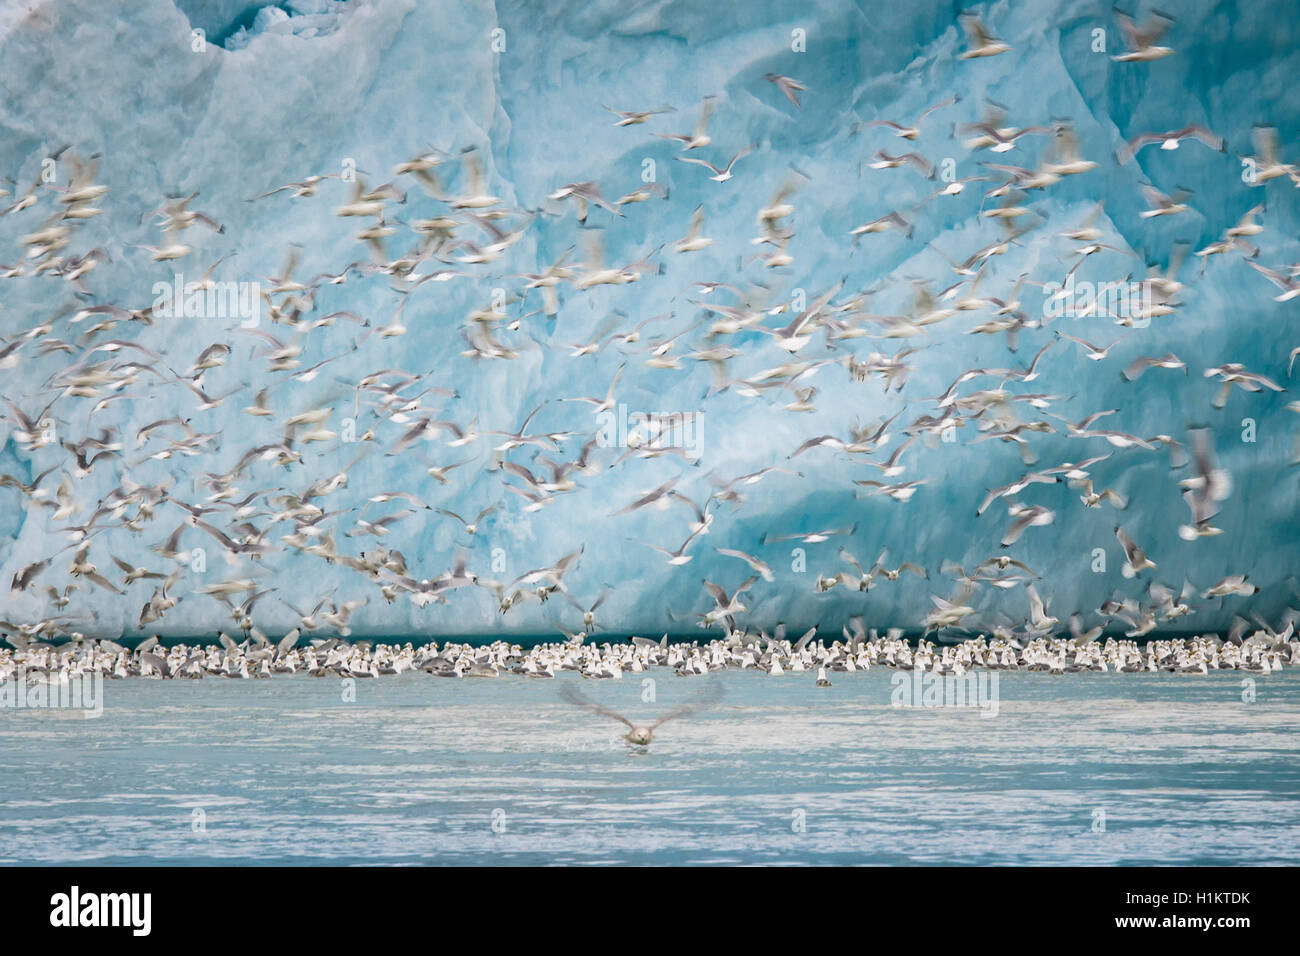 DreizehenmÃ¶wen, auch RosenmÃ¶wen (Rissa tridactyla, Larus tridactyla), fliegen vor einer Gletscherwand Stock Photo